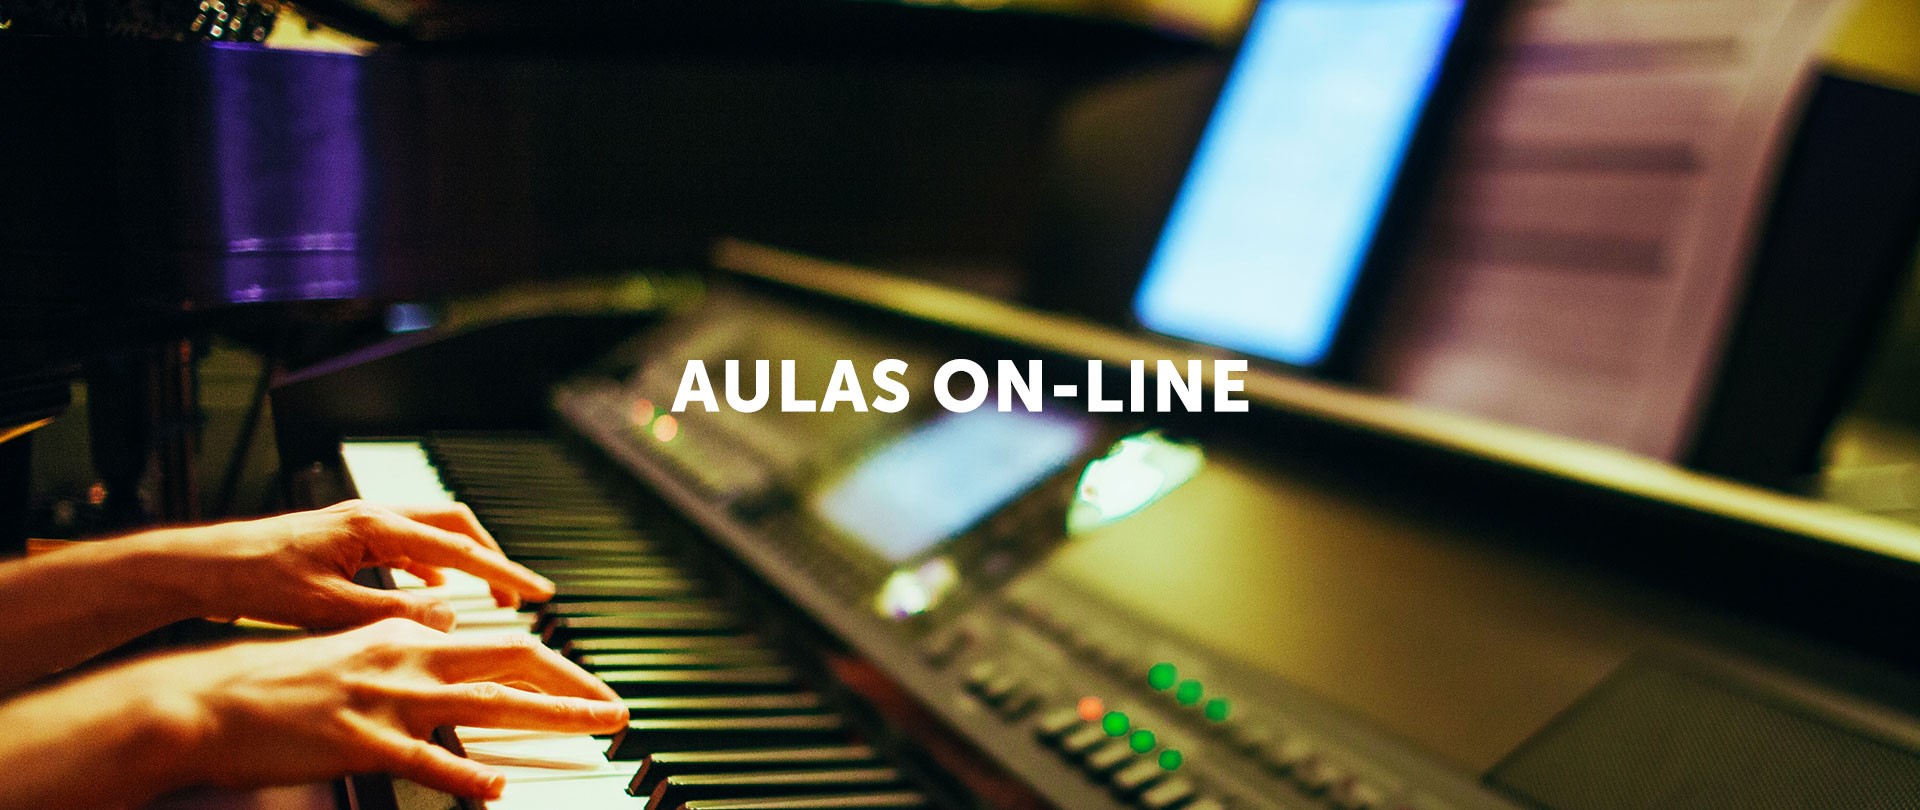 AULAS ON-LINE